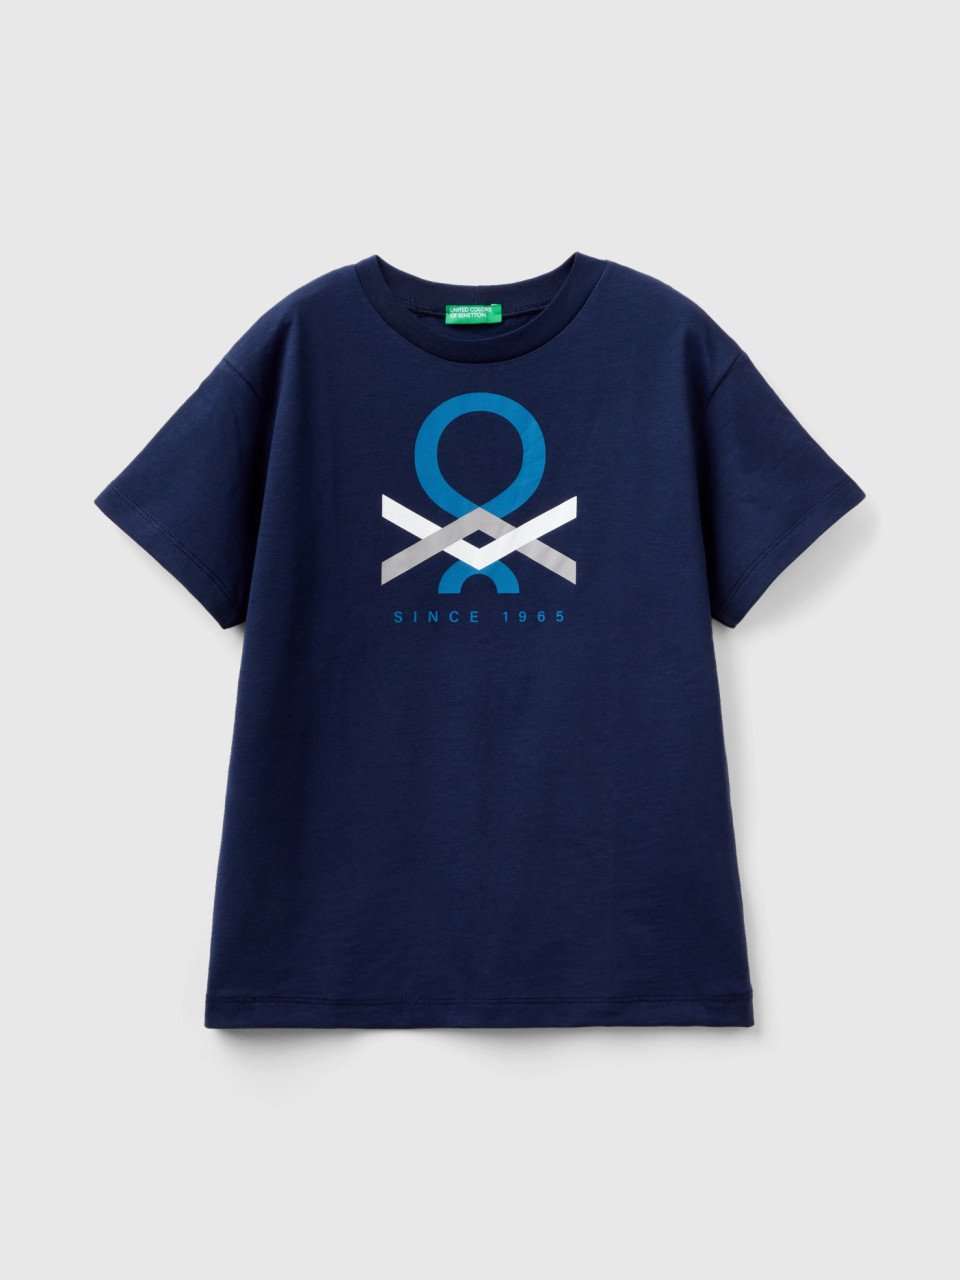 Benetton, Camiseta De 100 % Algodón Orgánico, Azul Oscuro, Niños